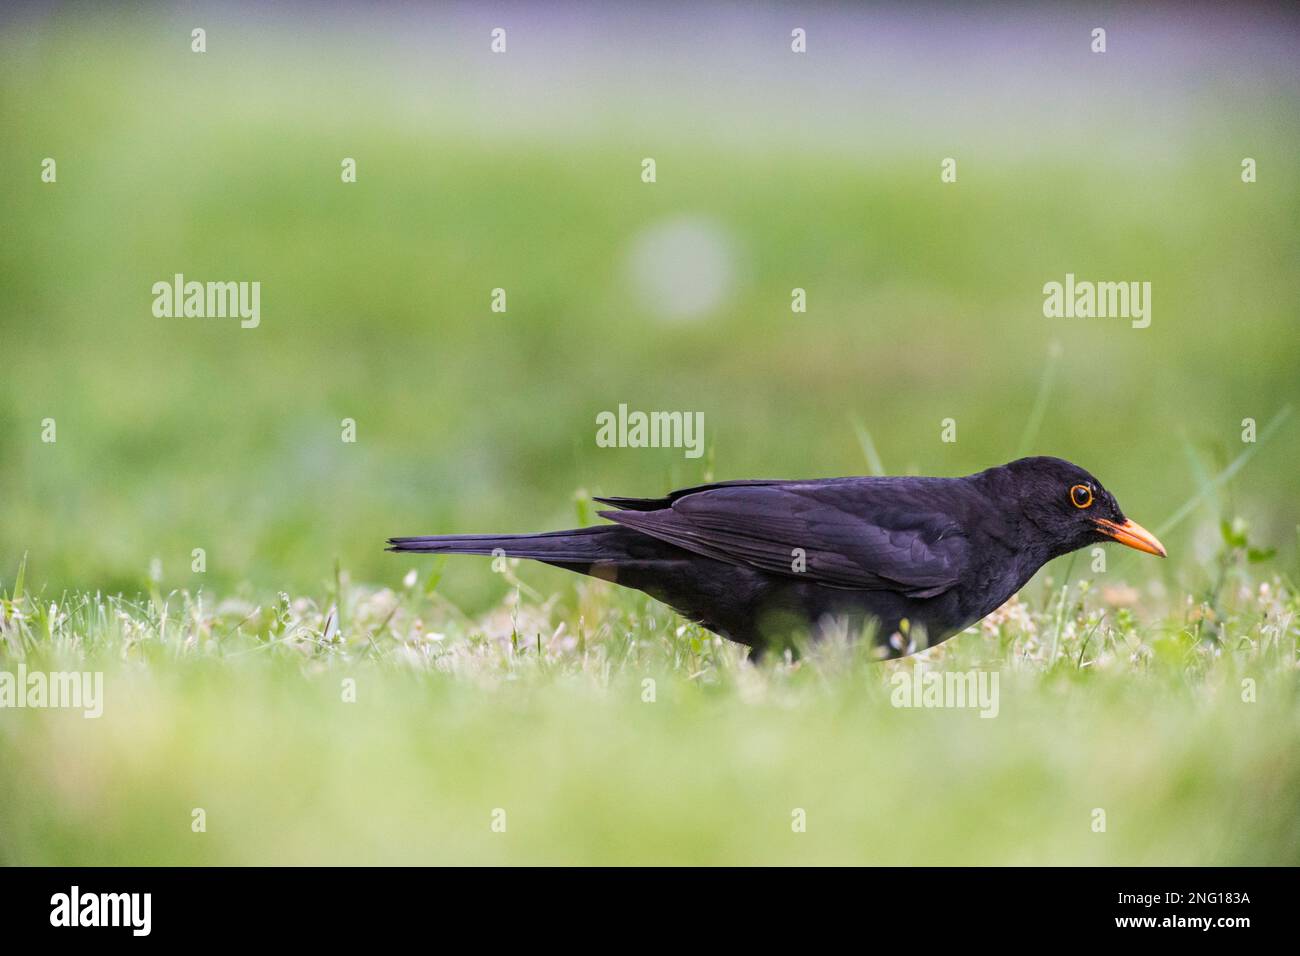 AMSEL auf Suche nach Würmern im gras - Blackbird recherche vers dans l'herbe Banque D'Images